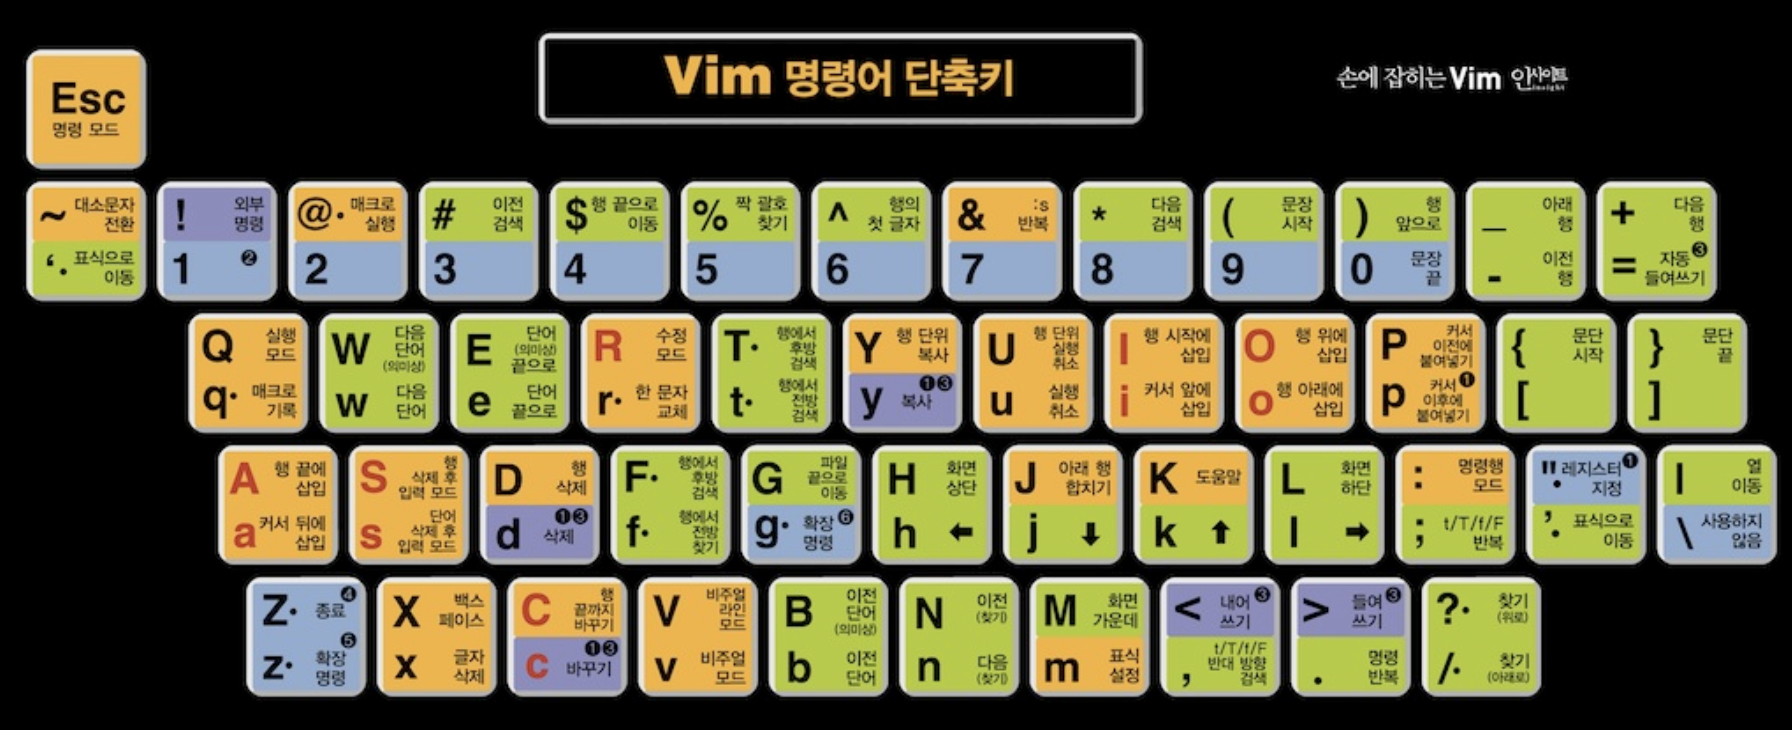 vim-shortkey-keyboard